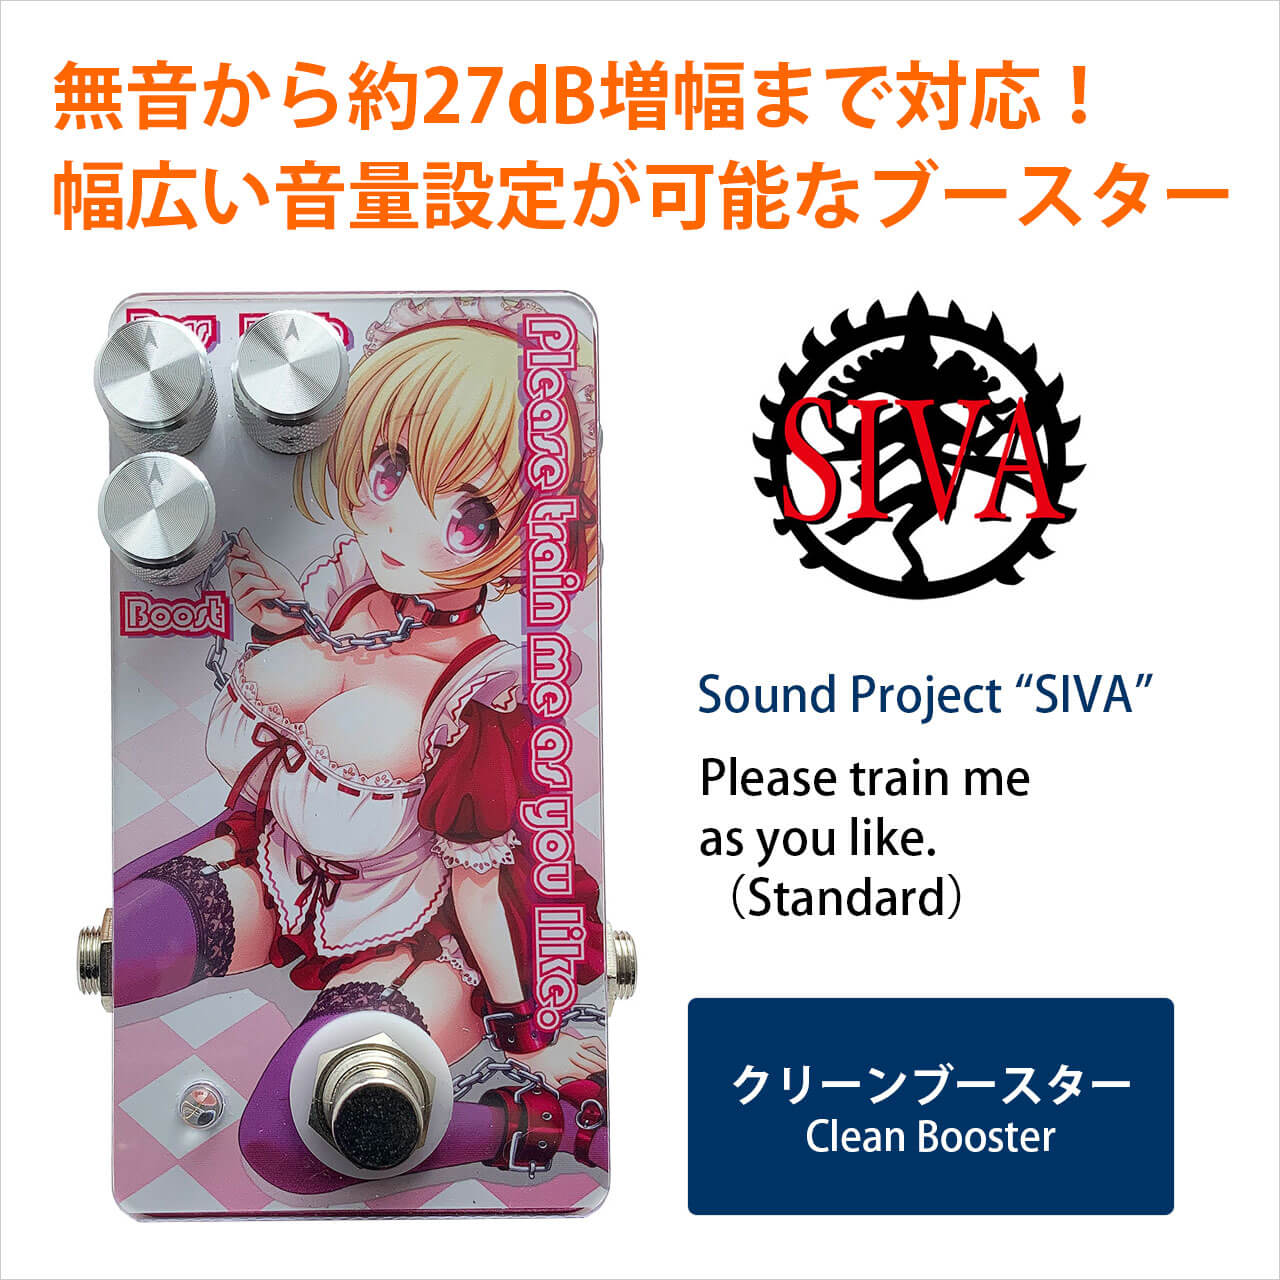 Sound Project “SIVA” サウンドプロジェクトシヴァ / Please train me